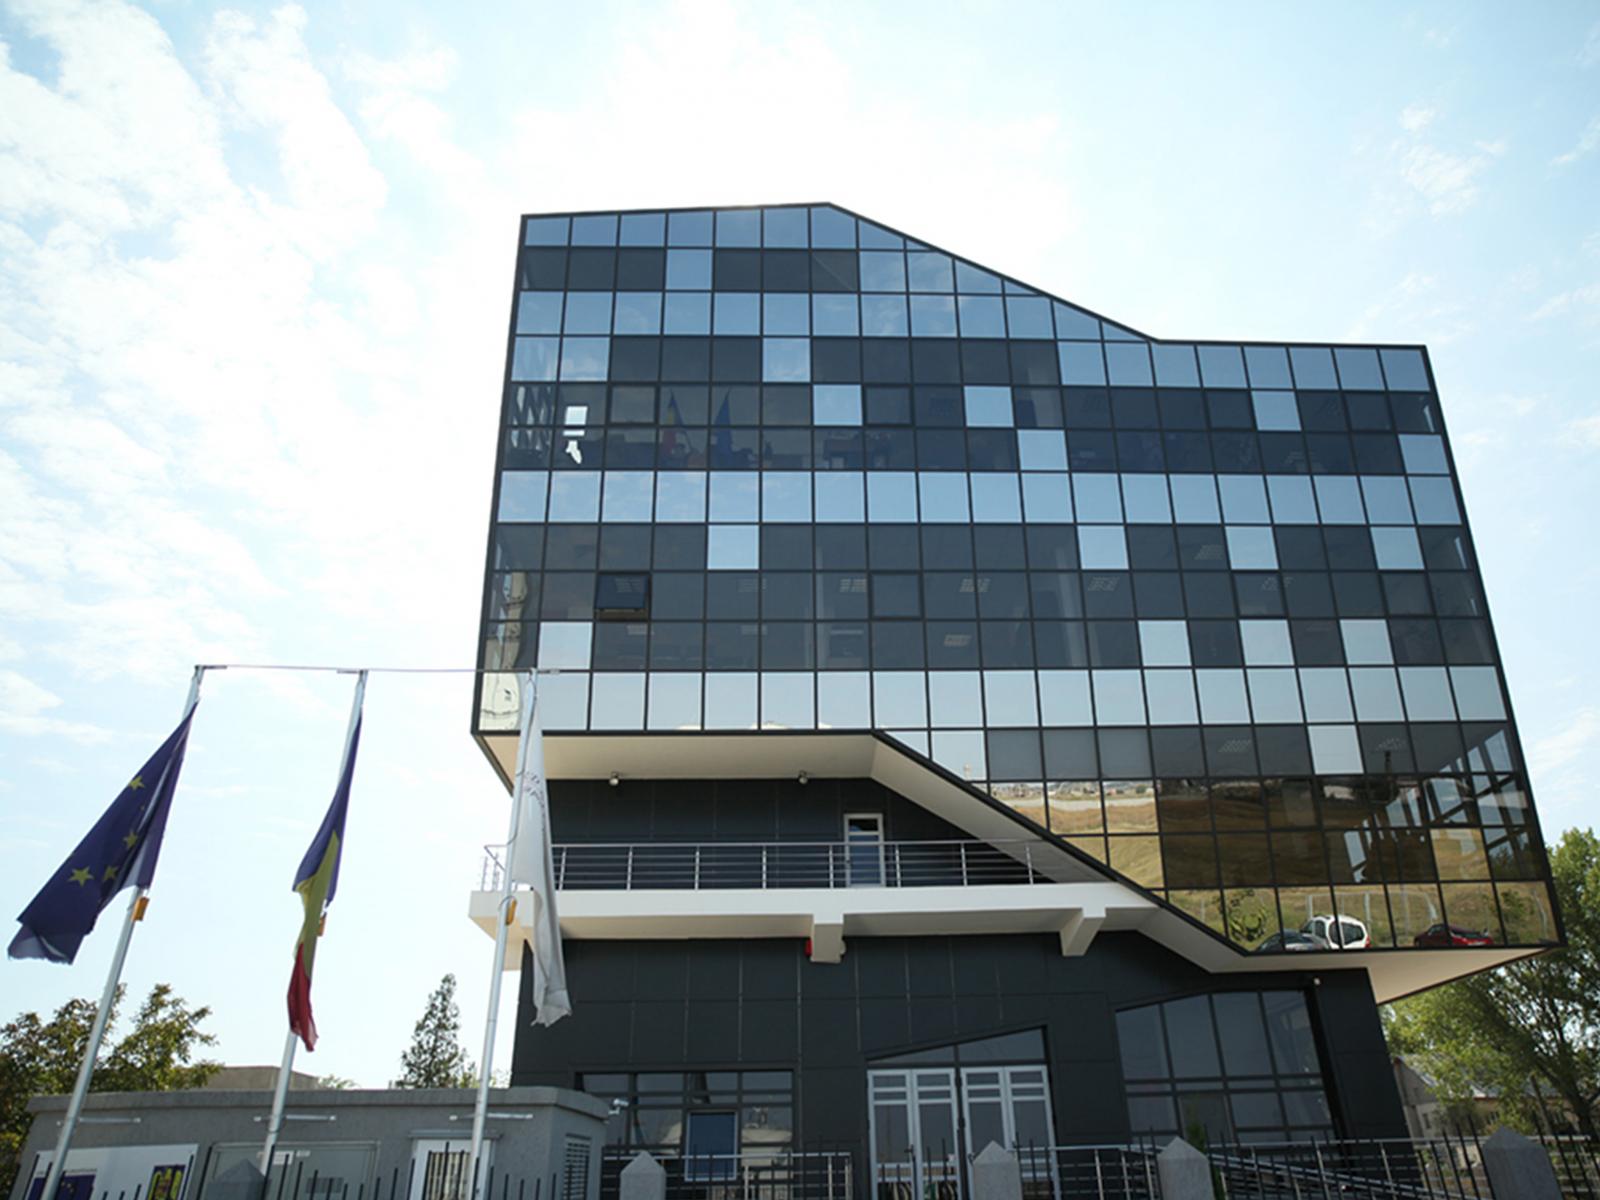 Concurs pentru ocuparea unui post de asistent registrator în cadrul compartimentului Asistență Managerială și Secretariat, la sediul central din municipiul Călărași - 18 iunie 2019